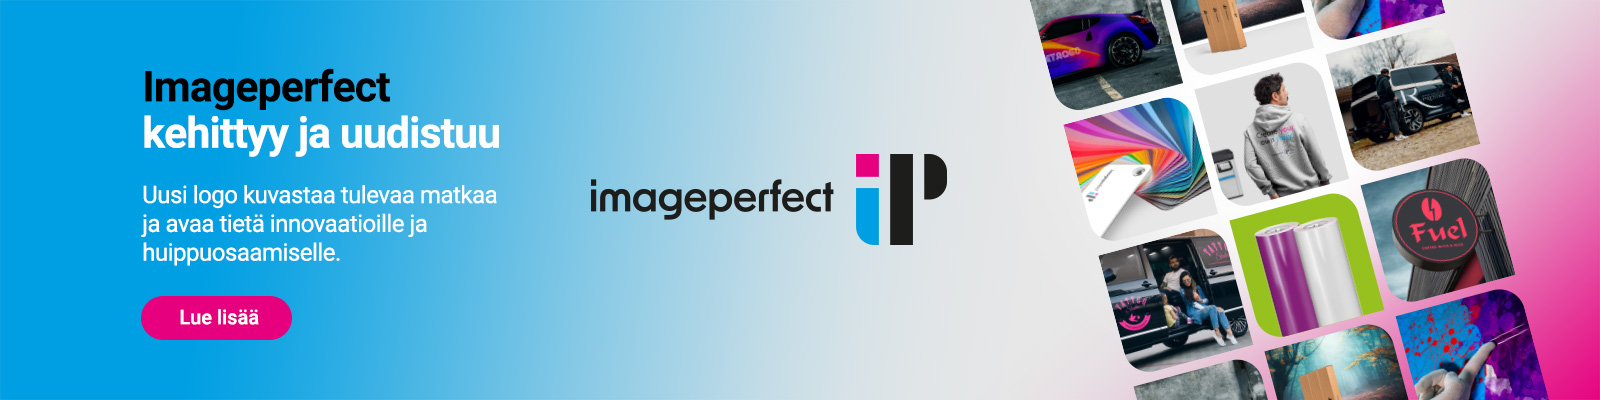 Imageperfect uudistuu - Lue lisää